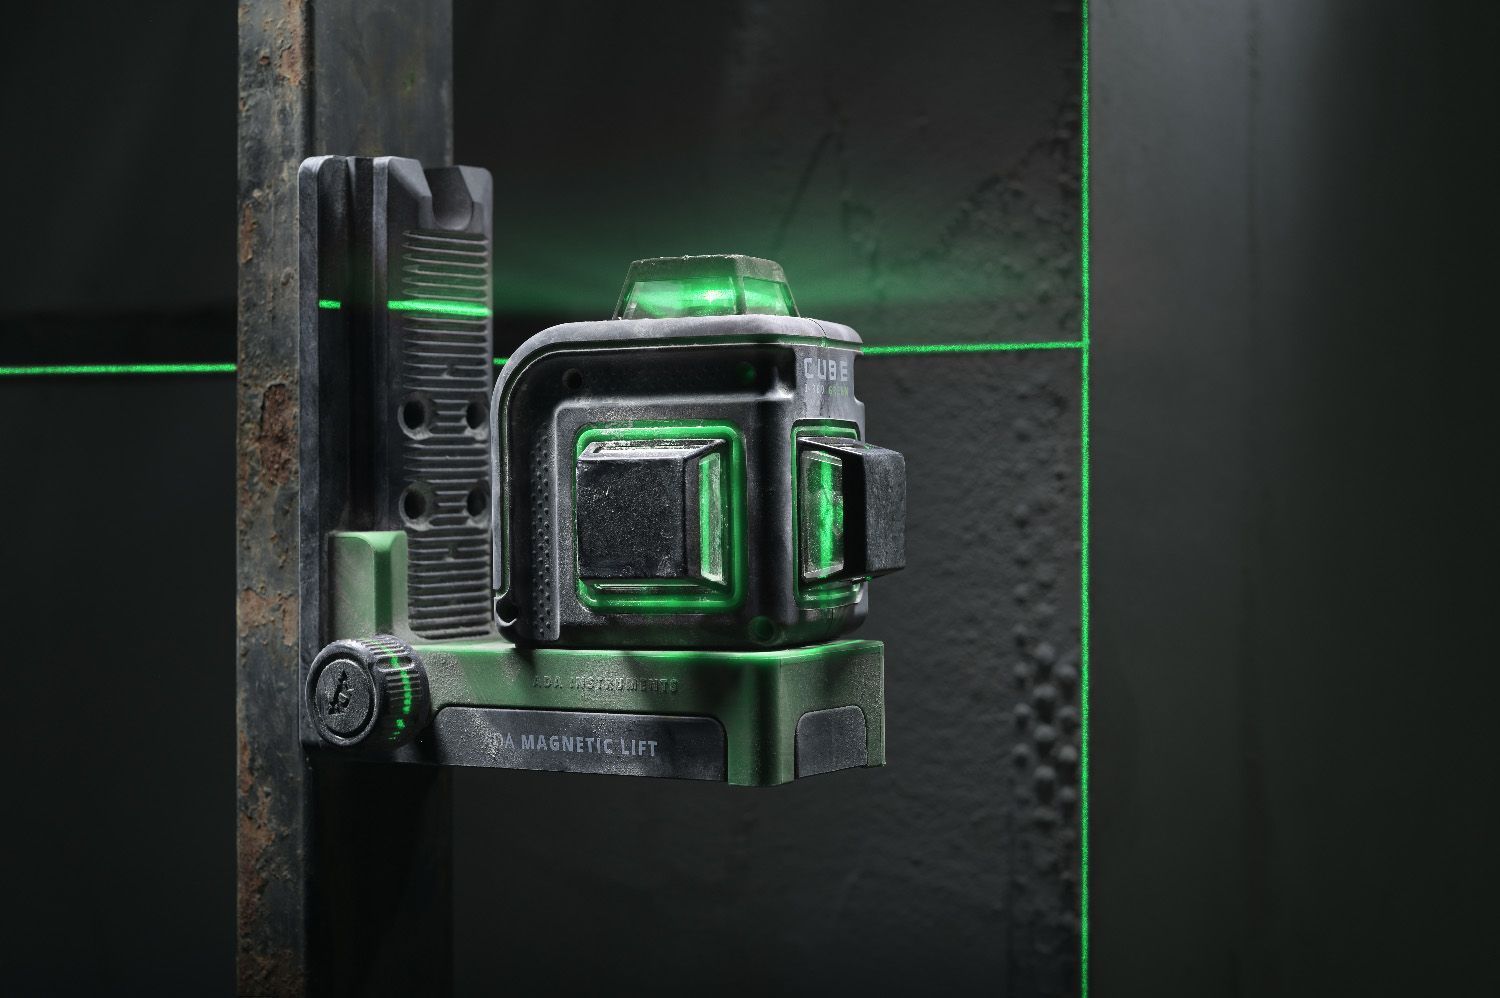 Лазерный уровень cube 360 green